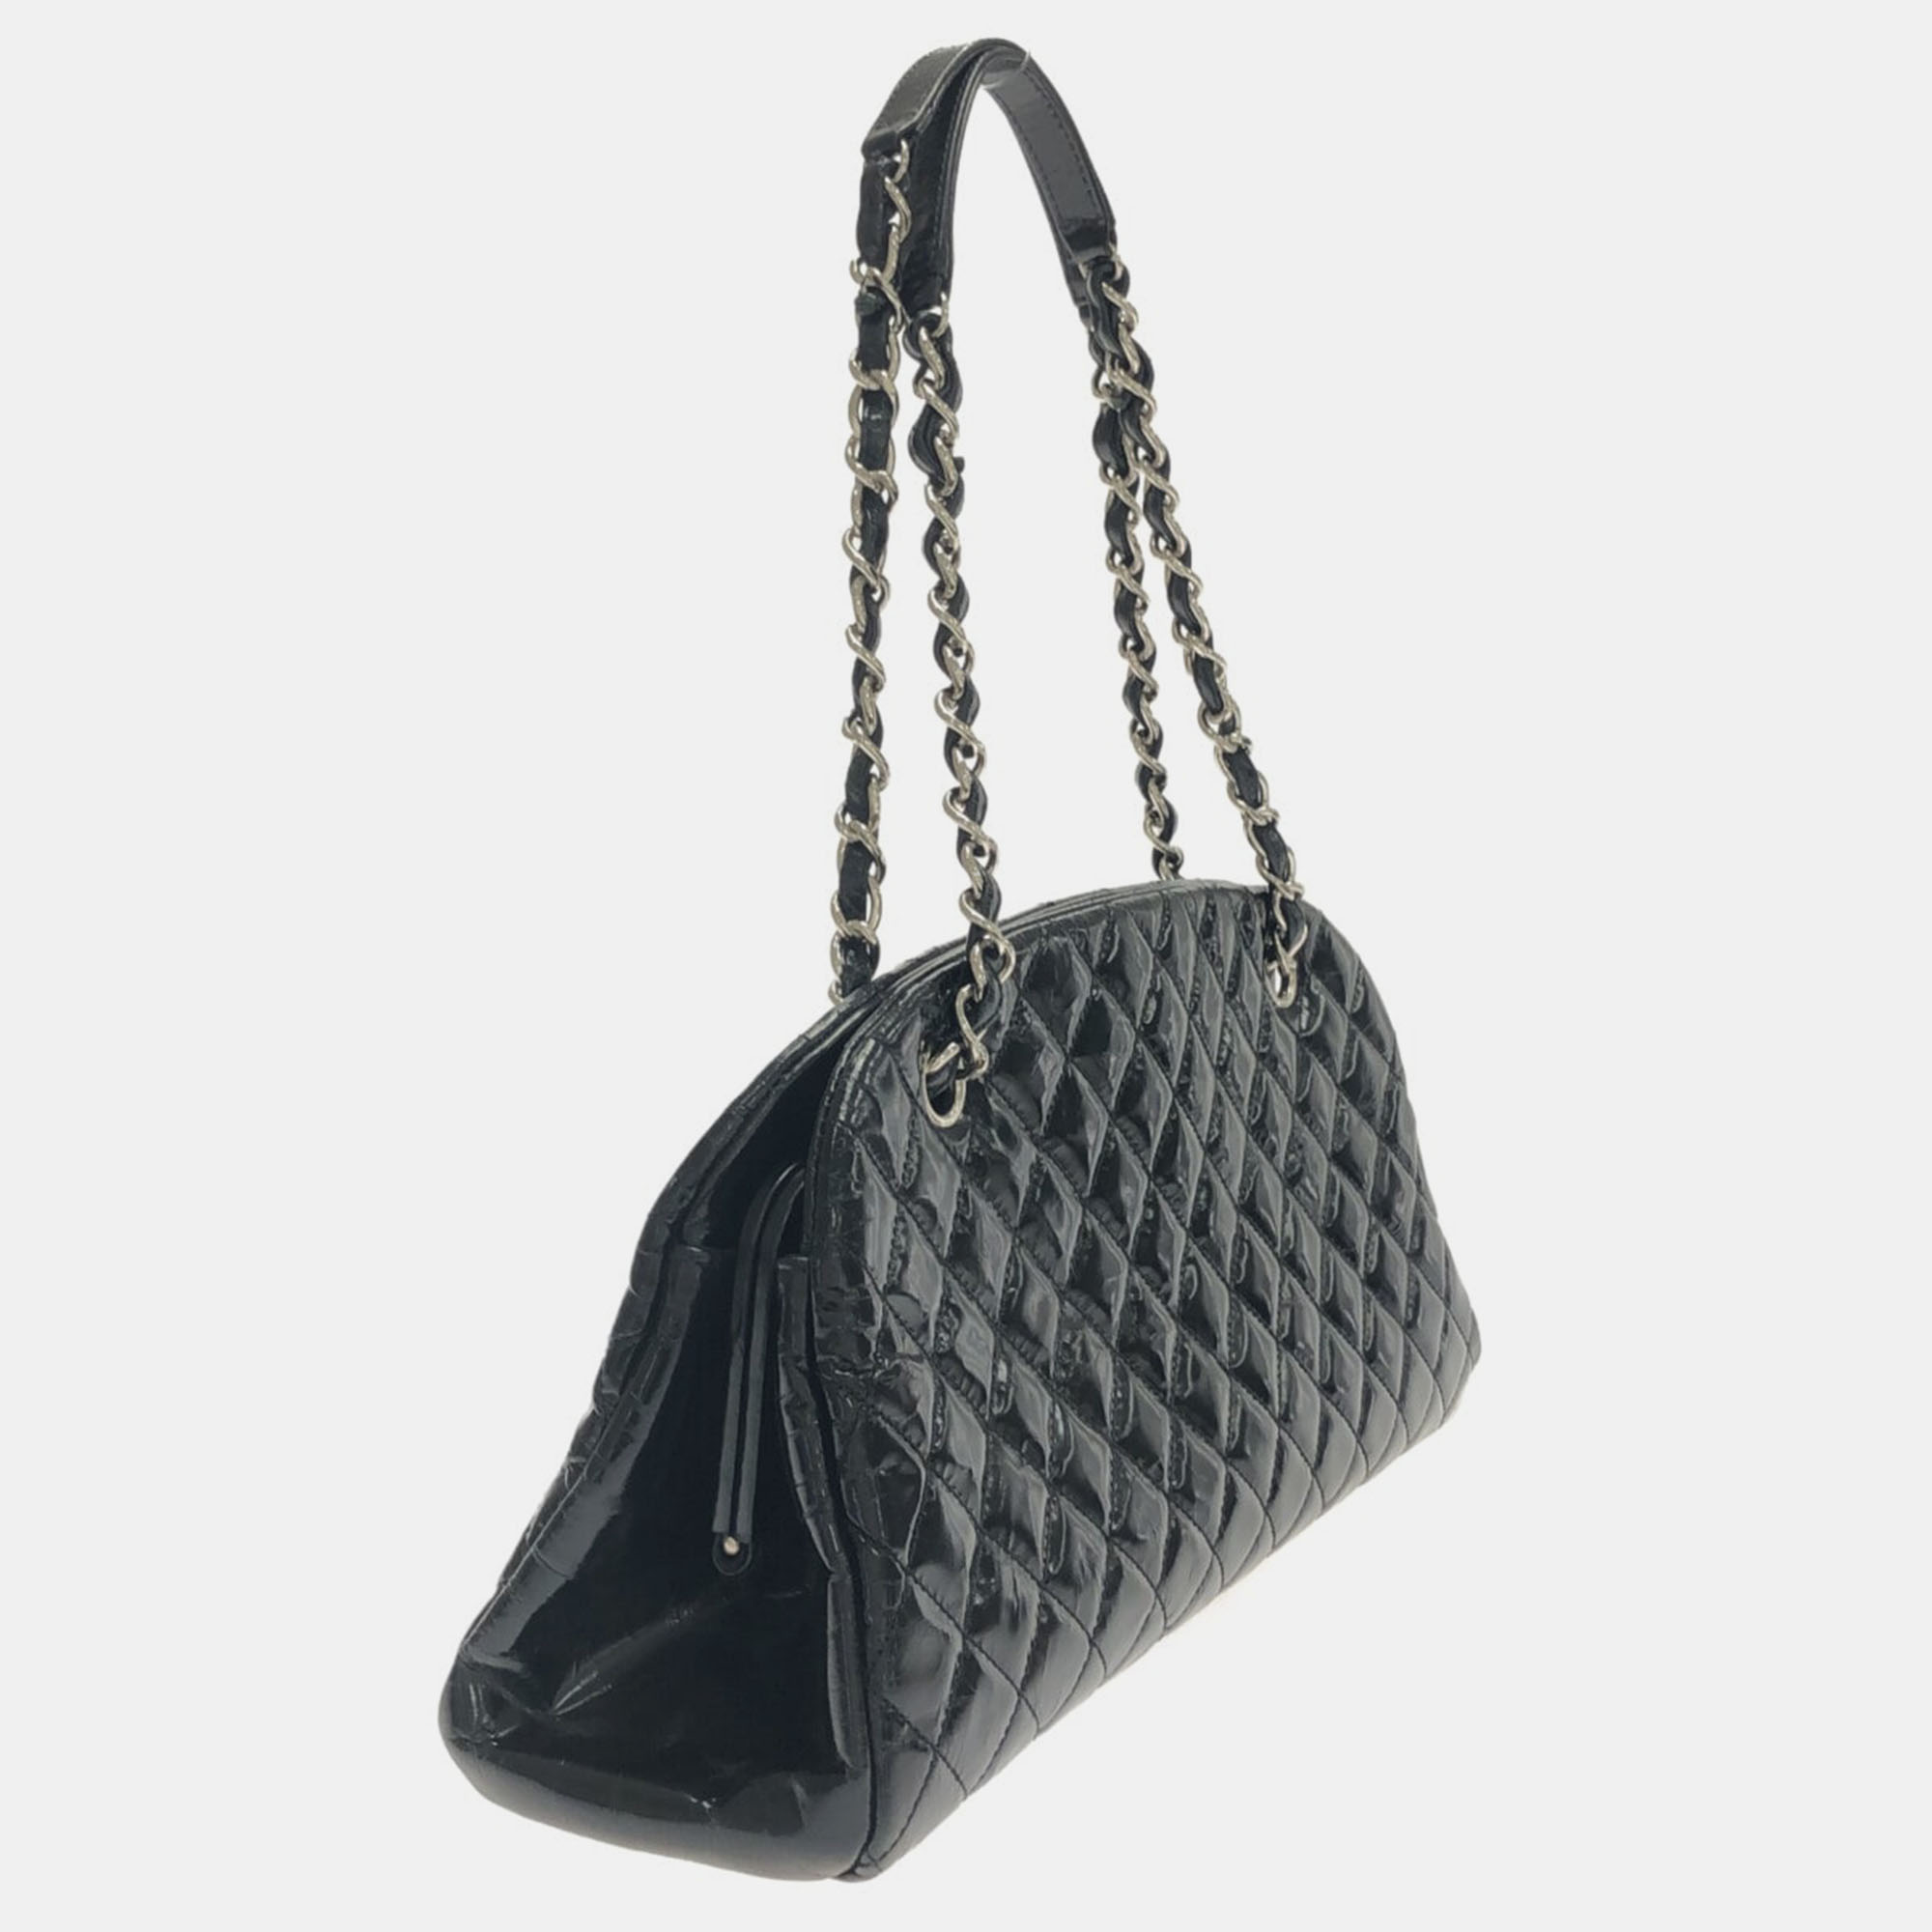 

Chanel Black Patent Leather Mademoiselle shoulder Bag